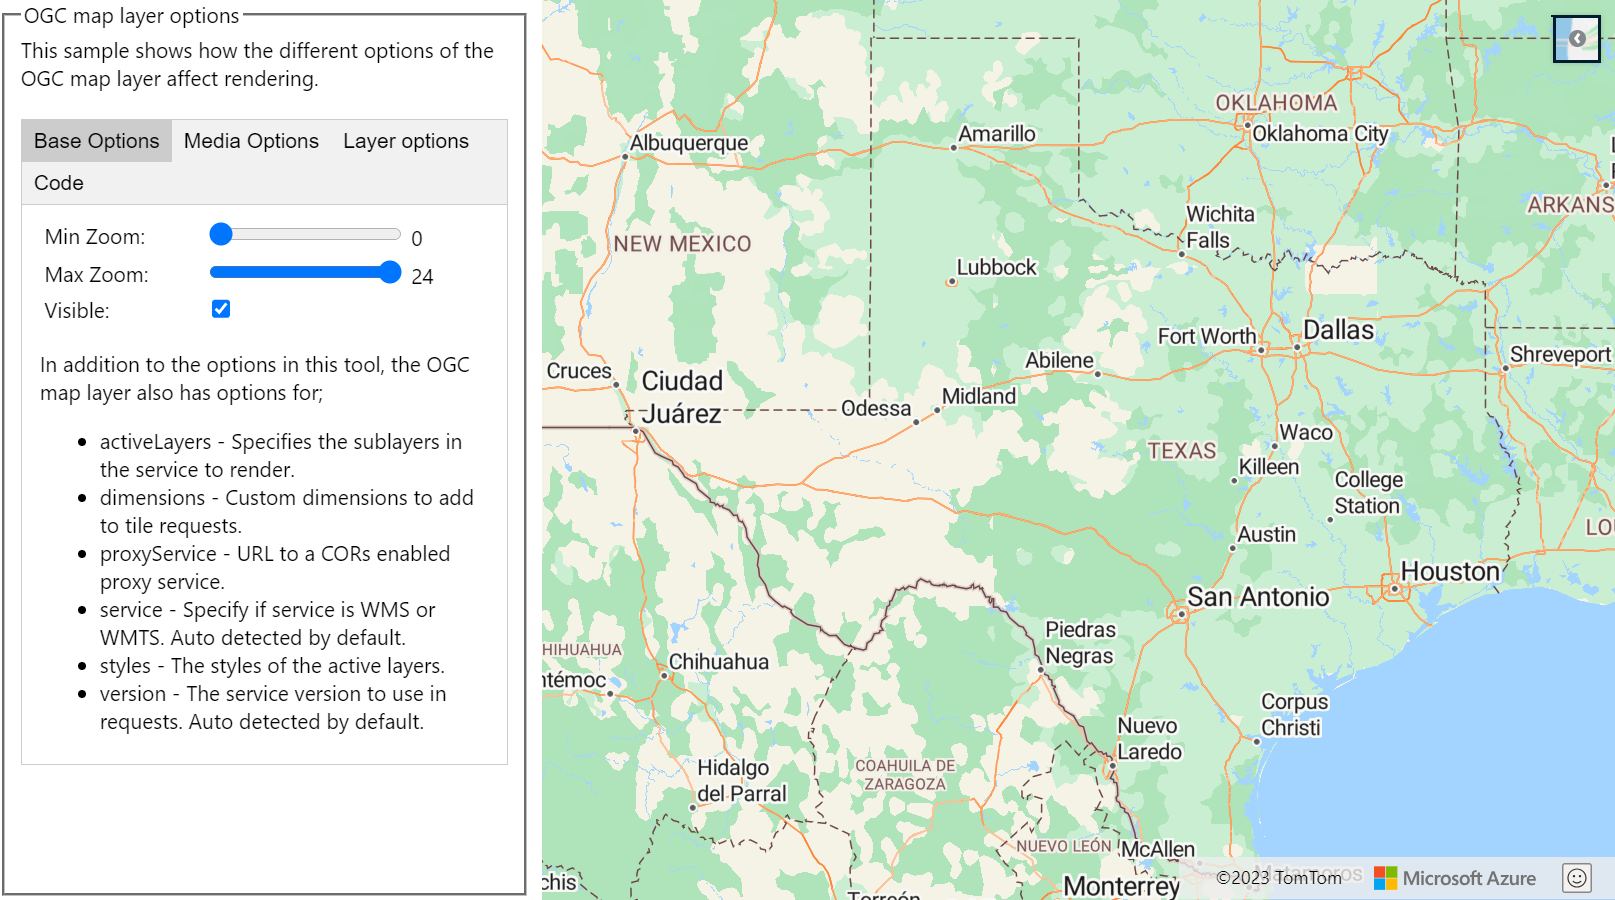 Uma captura de tela mostrando um mapa junto com as opções de camada do mapa do OGC.